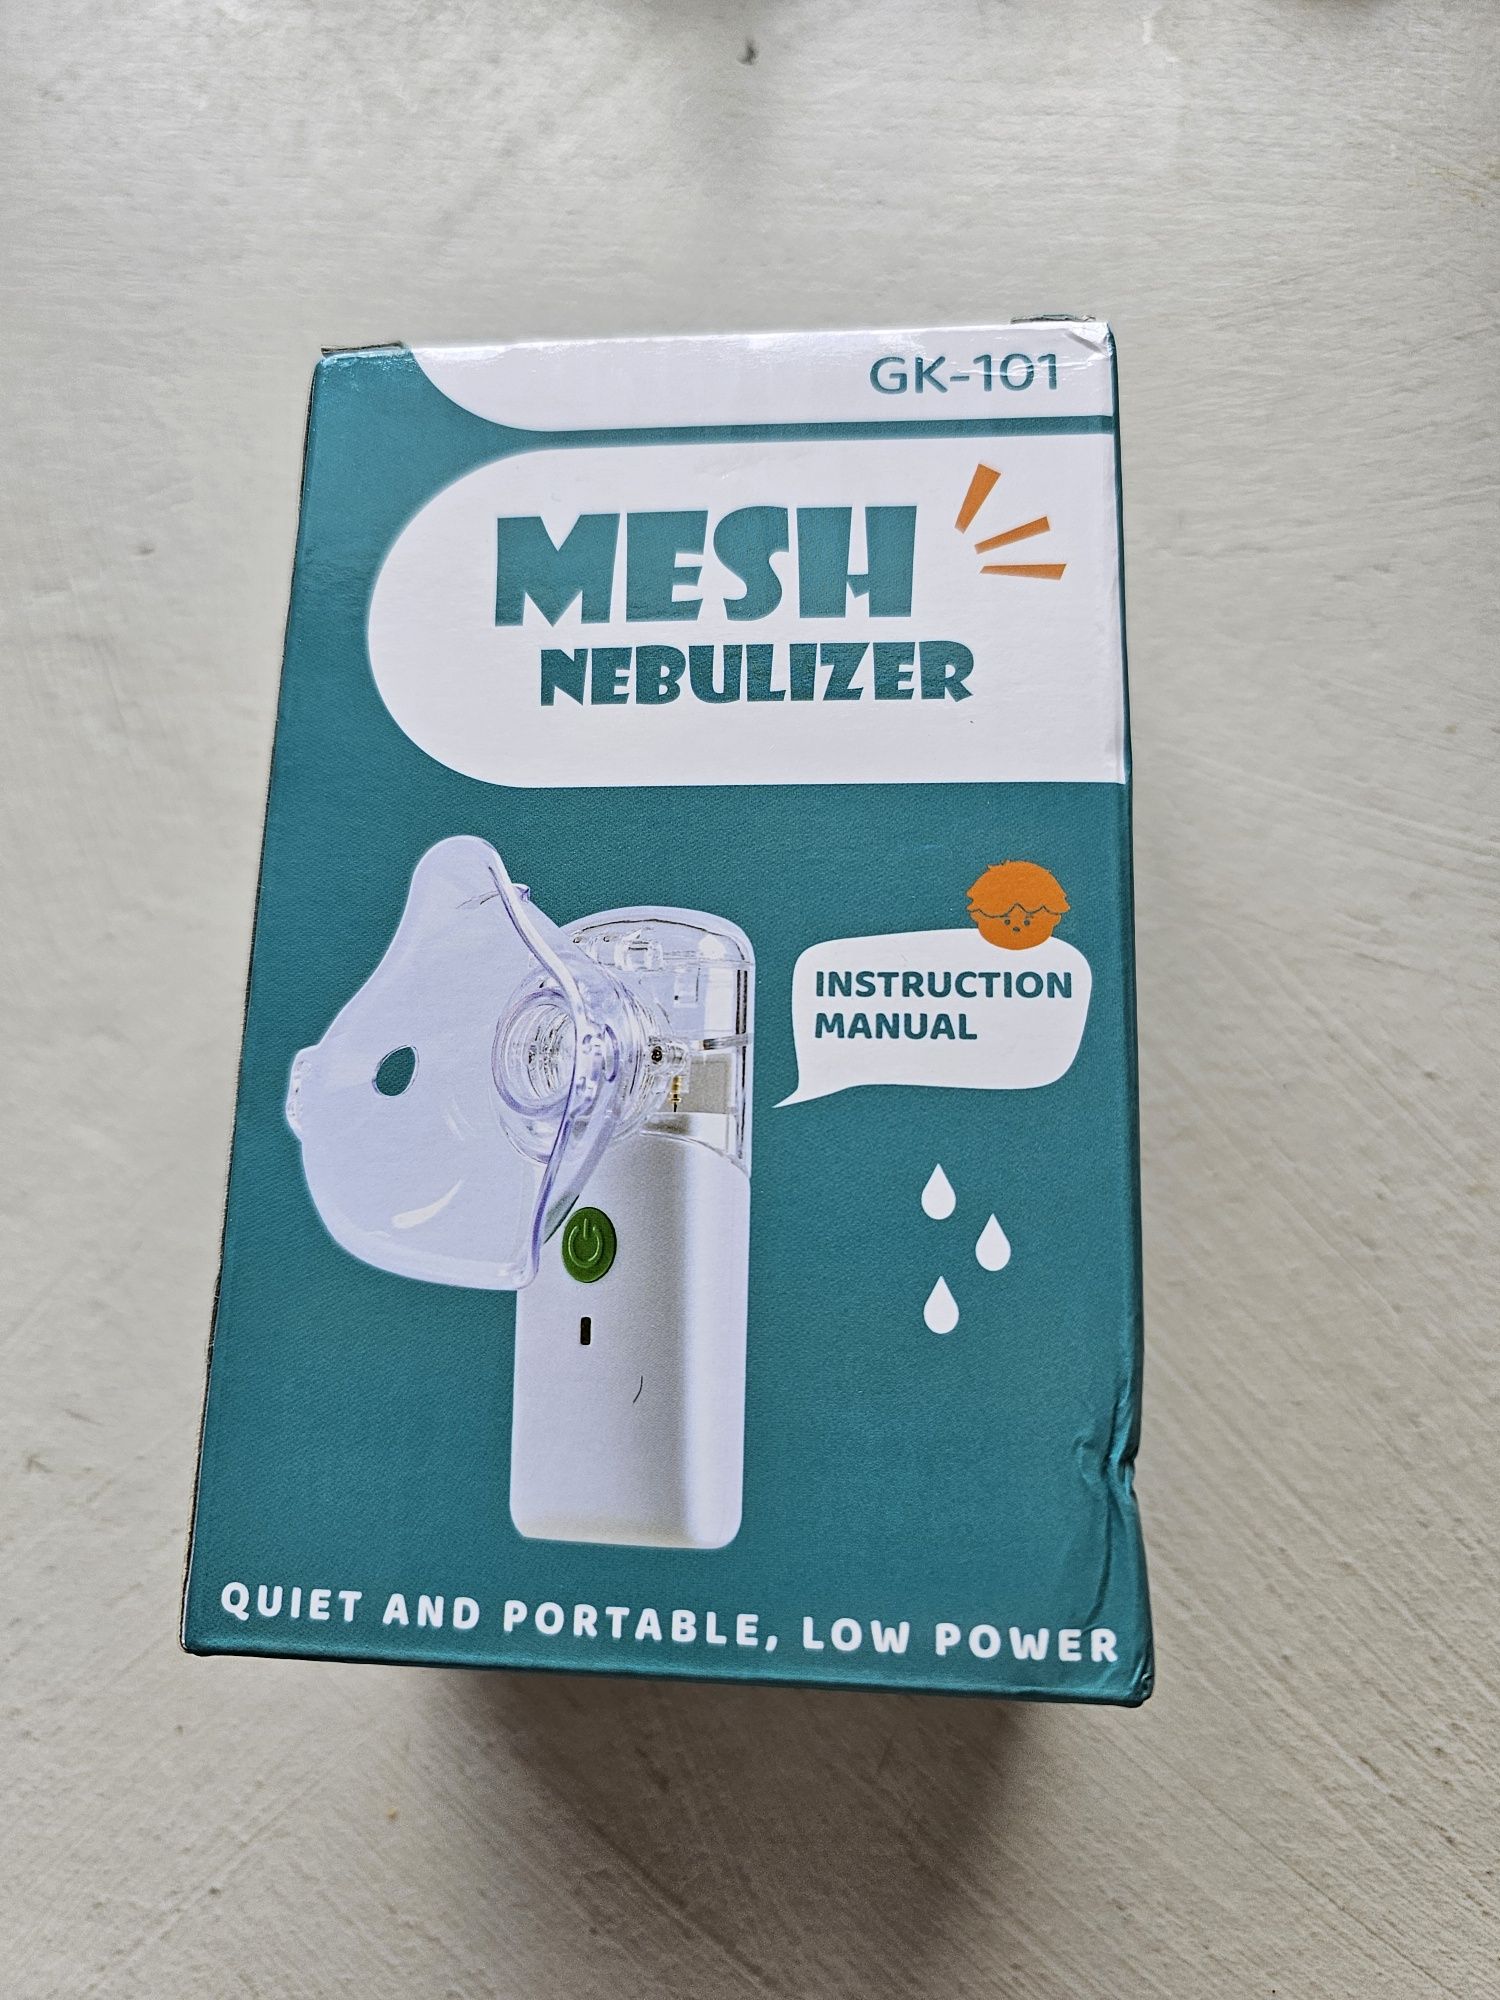 Nebulizator mesh dla dzieci i dorosłych